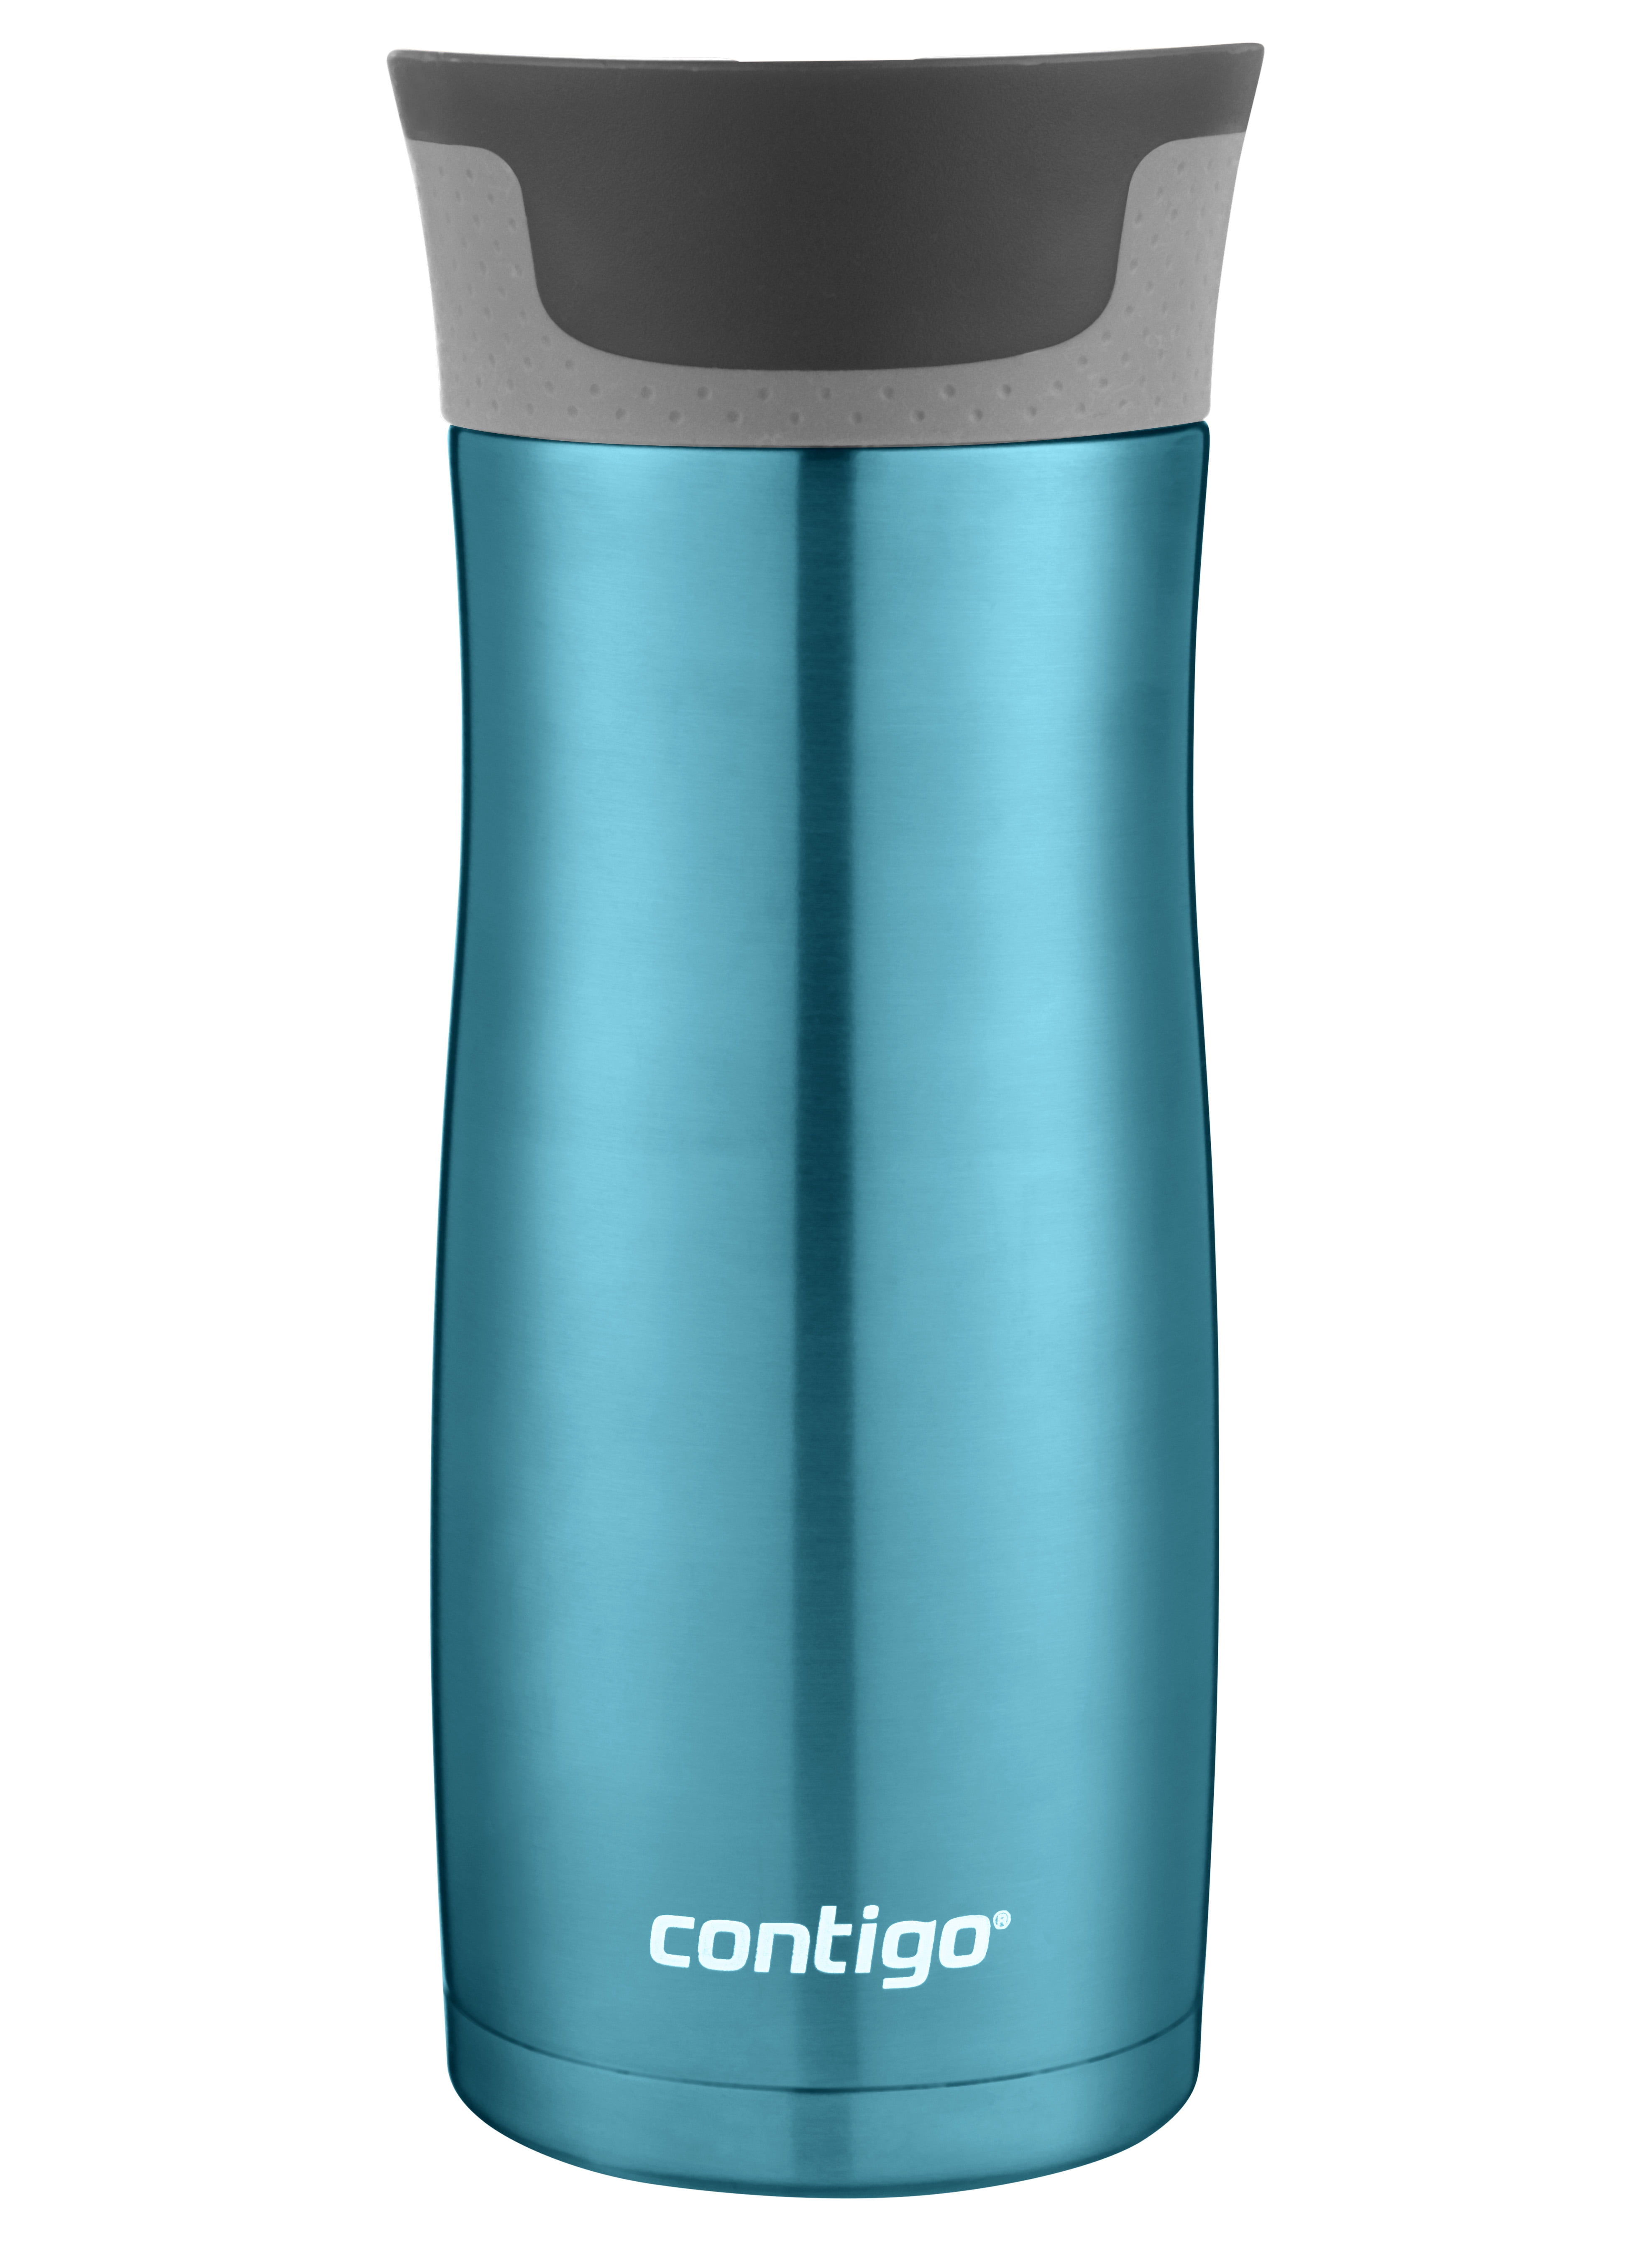 Custom Contigo 16oz Color Travel Mug 100% Spill Proof Stainless